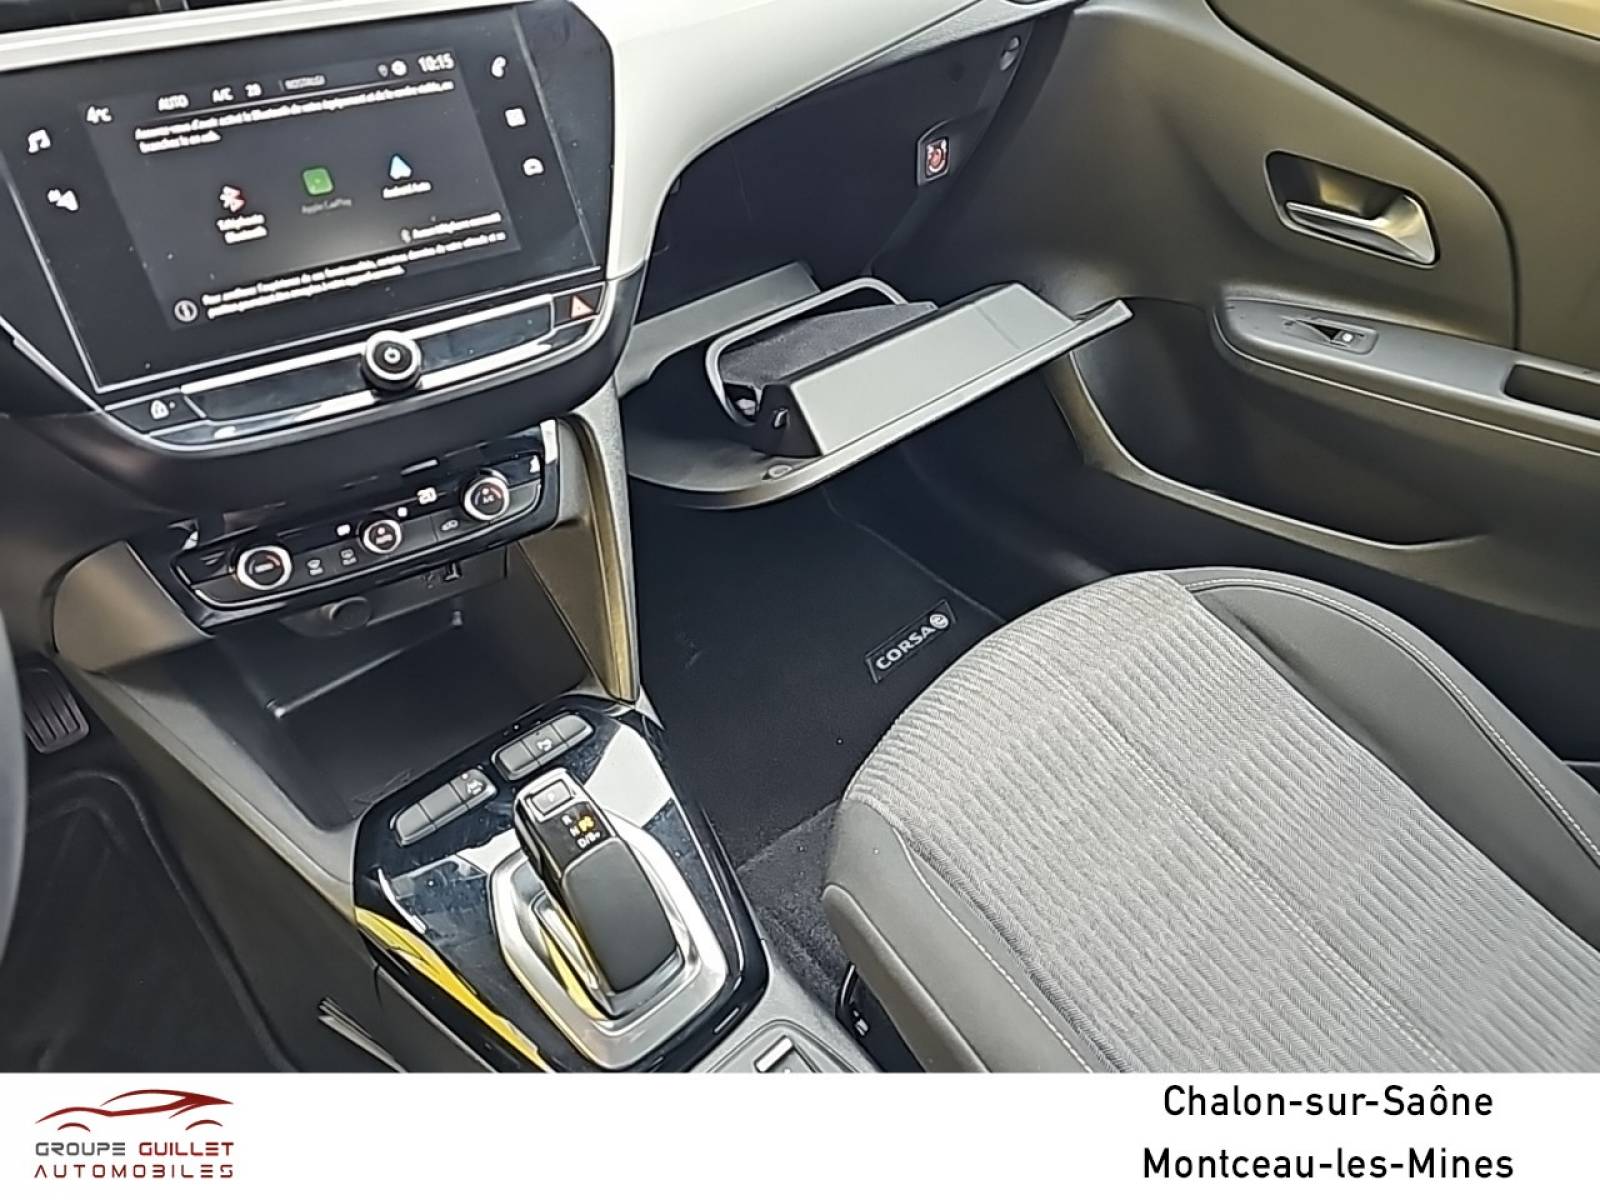 OPEL Corsa Electrique 136 ch & Batterie 50 kWh - véhicule d'occasion - Groupe Guillet - Opel Magicauto Chalon - 71380 - Saint-Marcel - 37